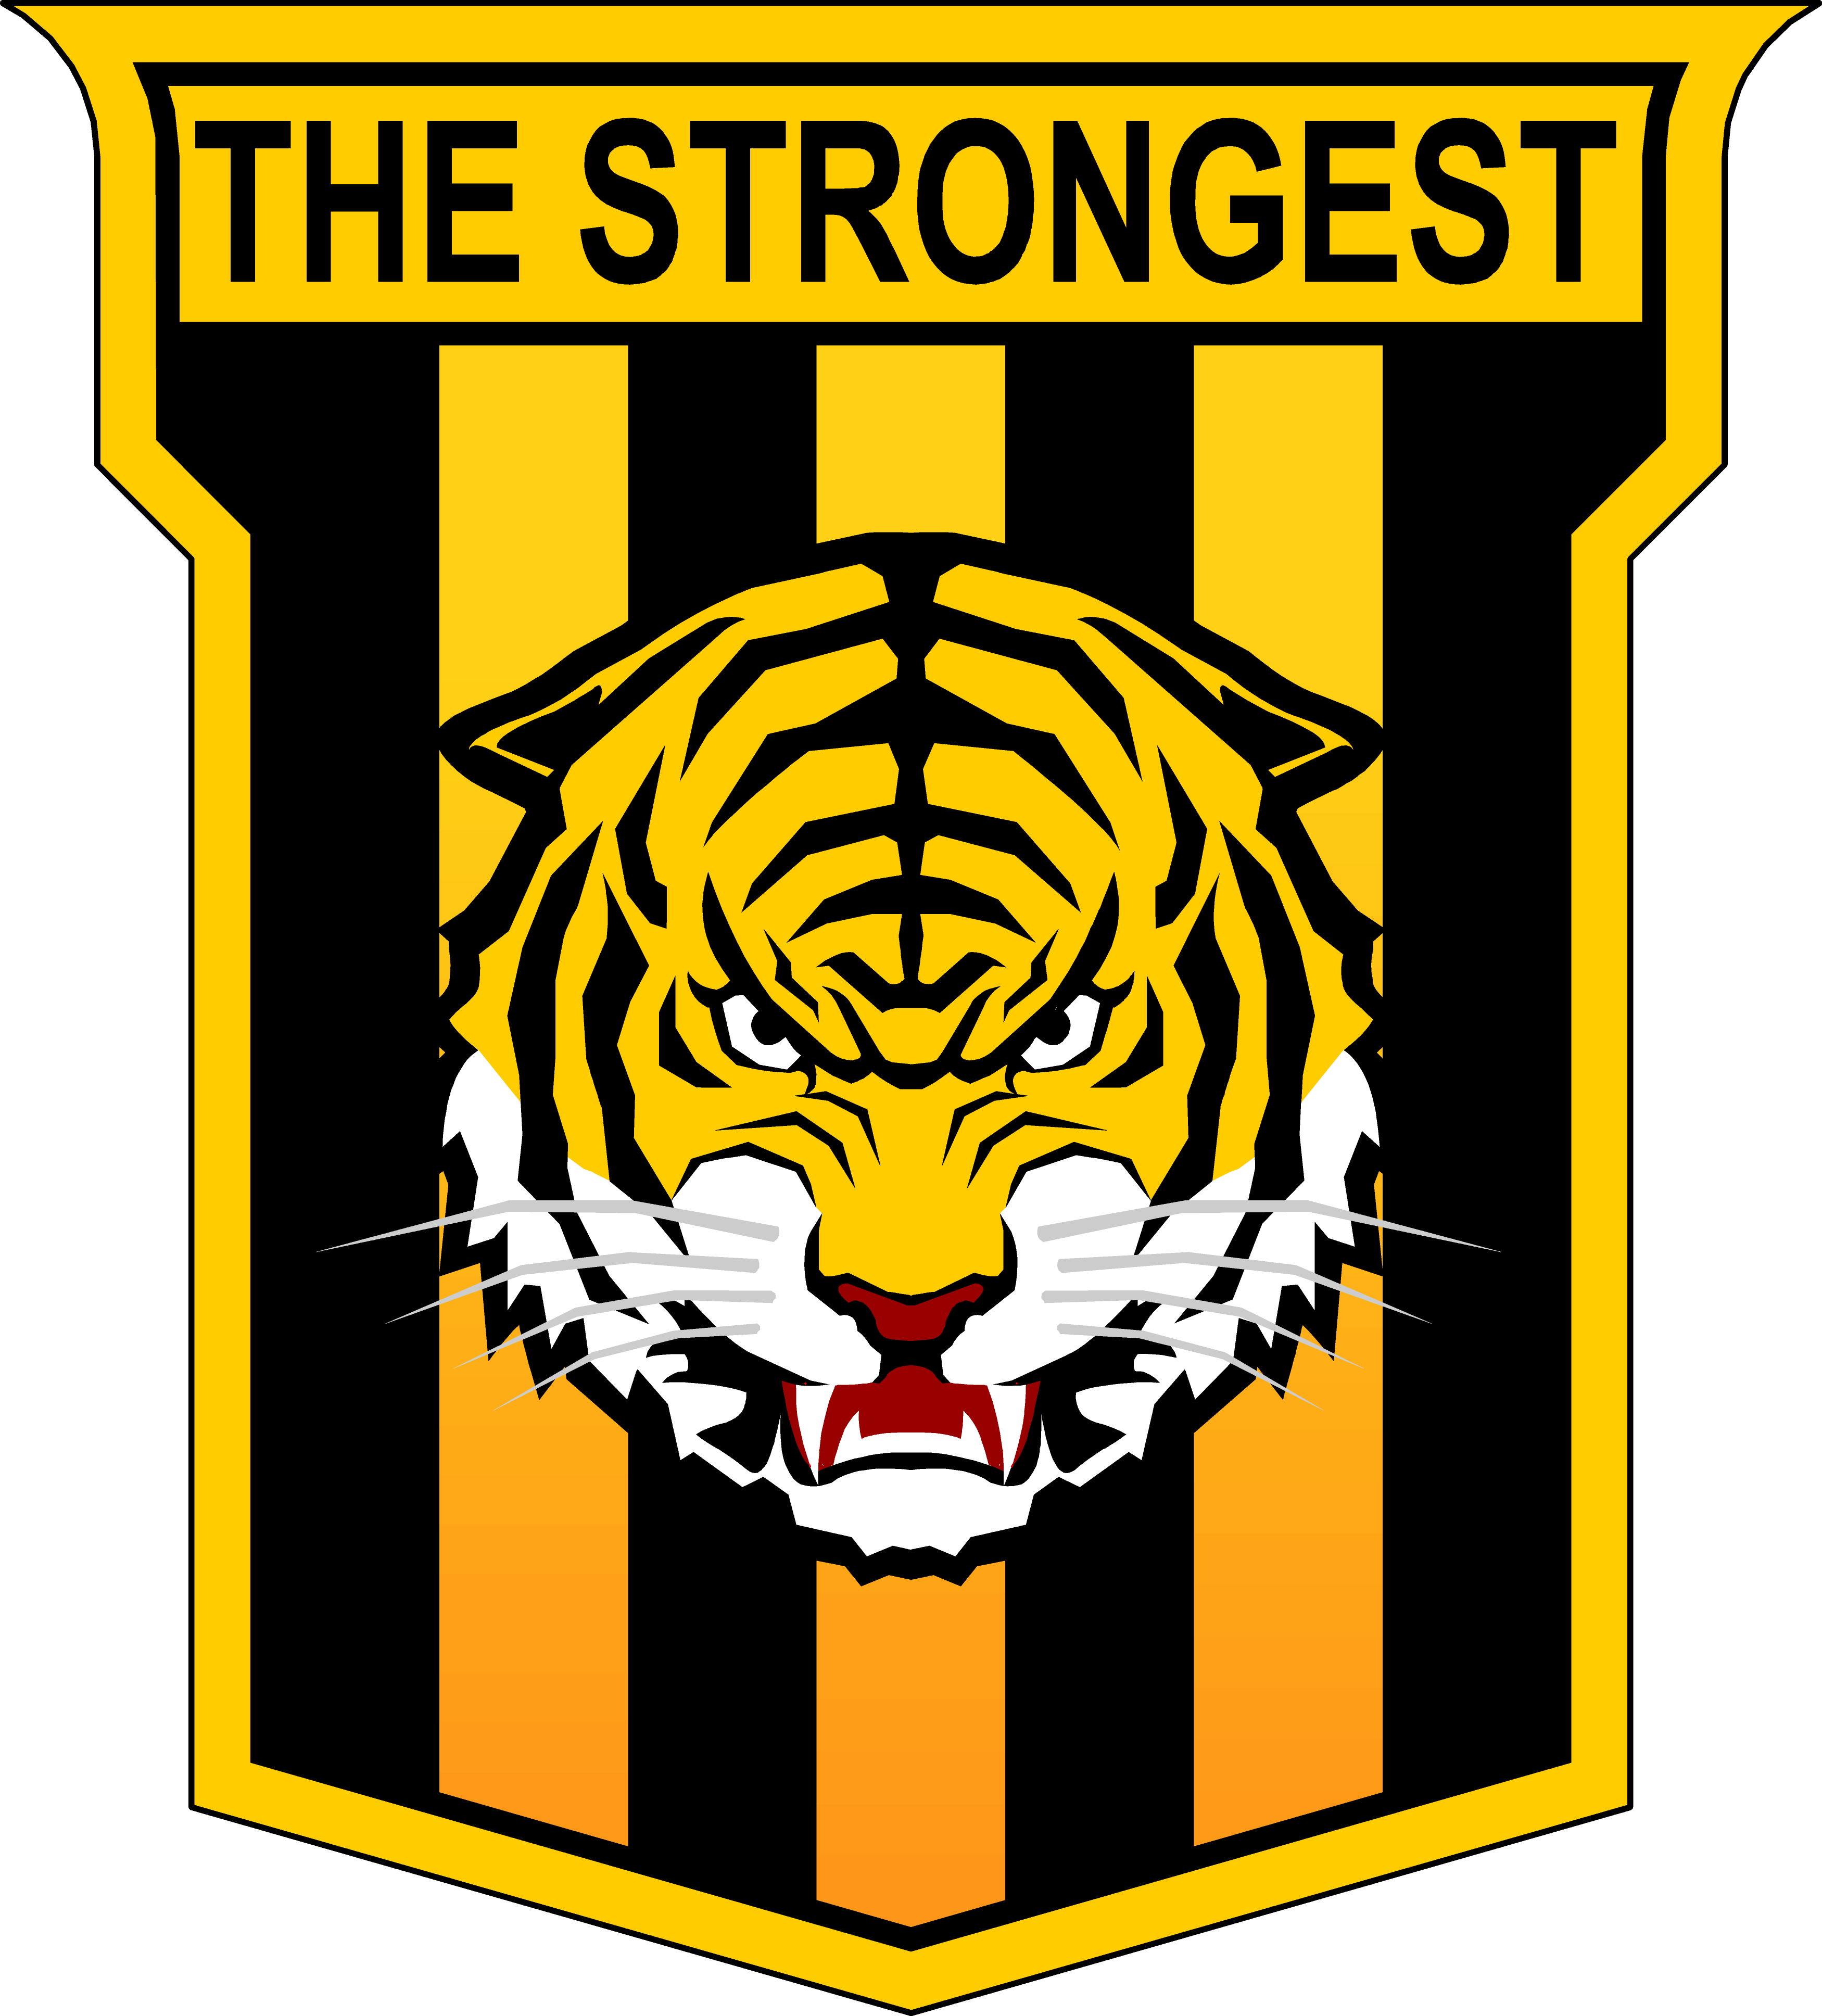 The Strongest logo, escudo.